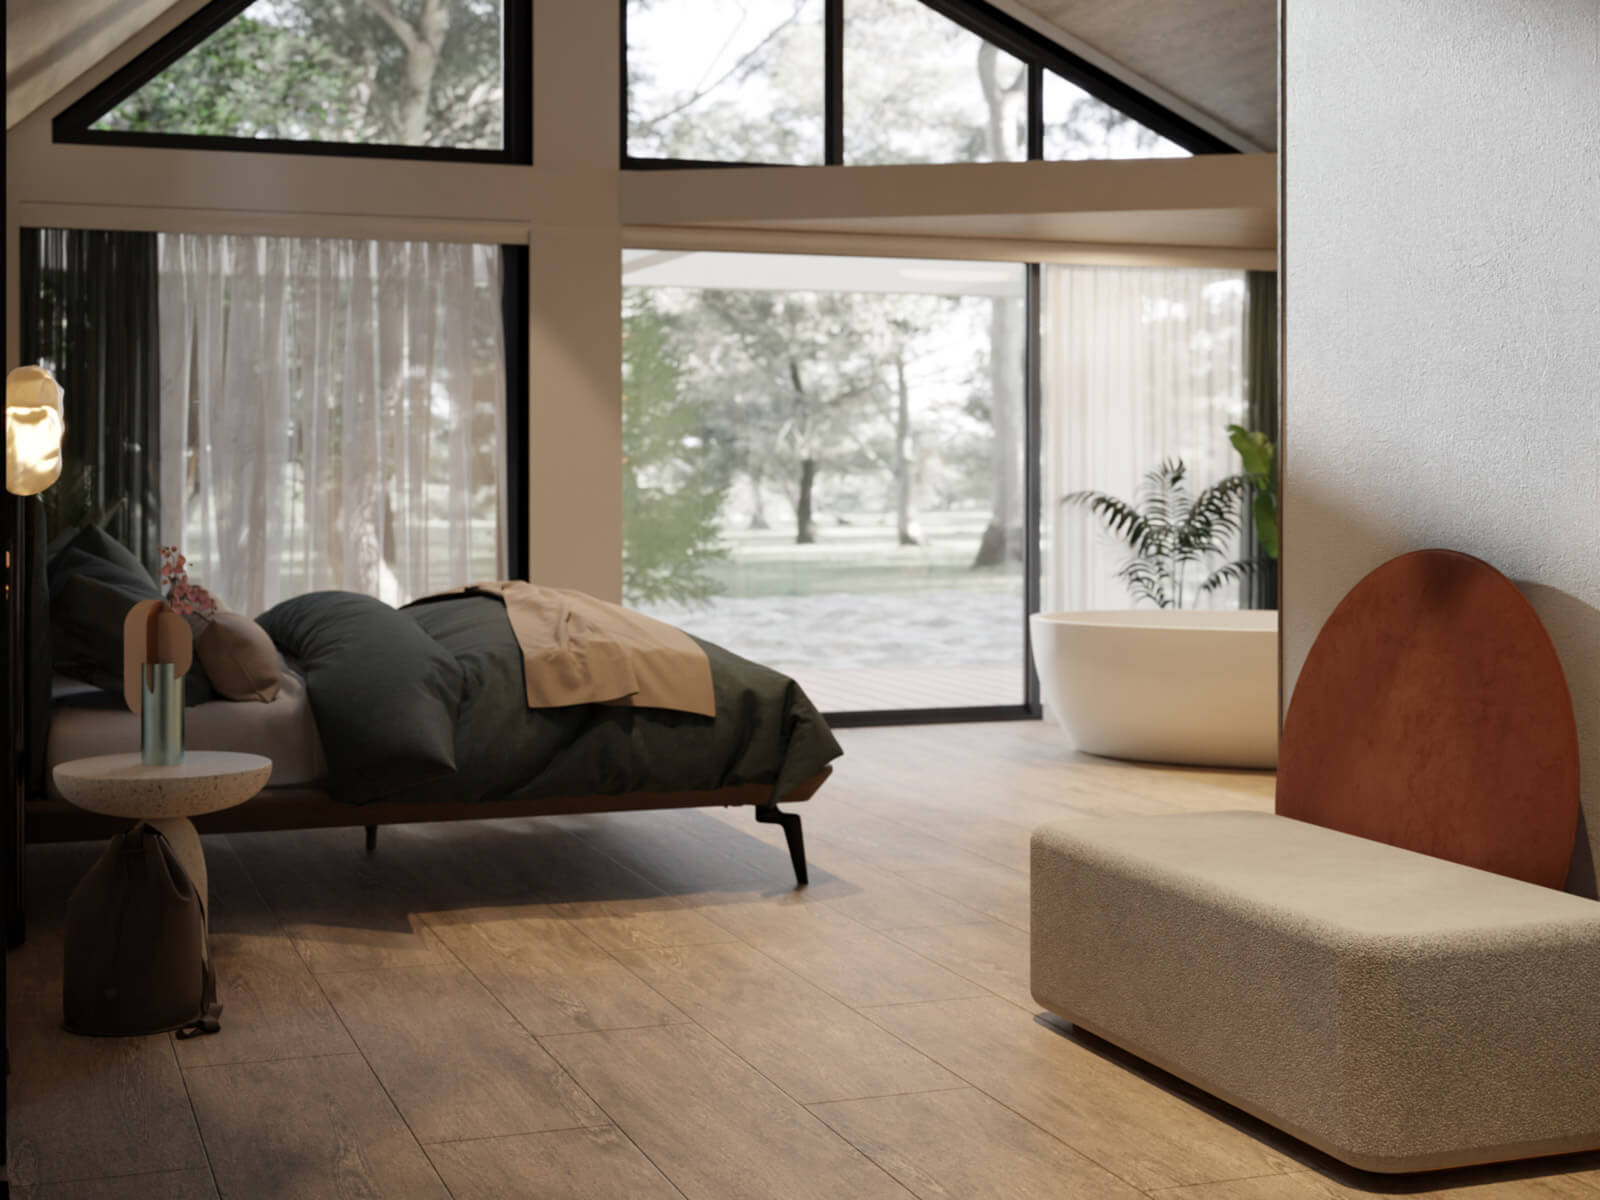 Erdei nyaraló belső 3D látványterve kanapéval és ággyal a háttérben pedig erdő látható